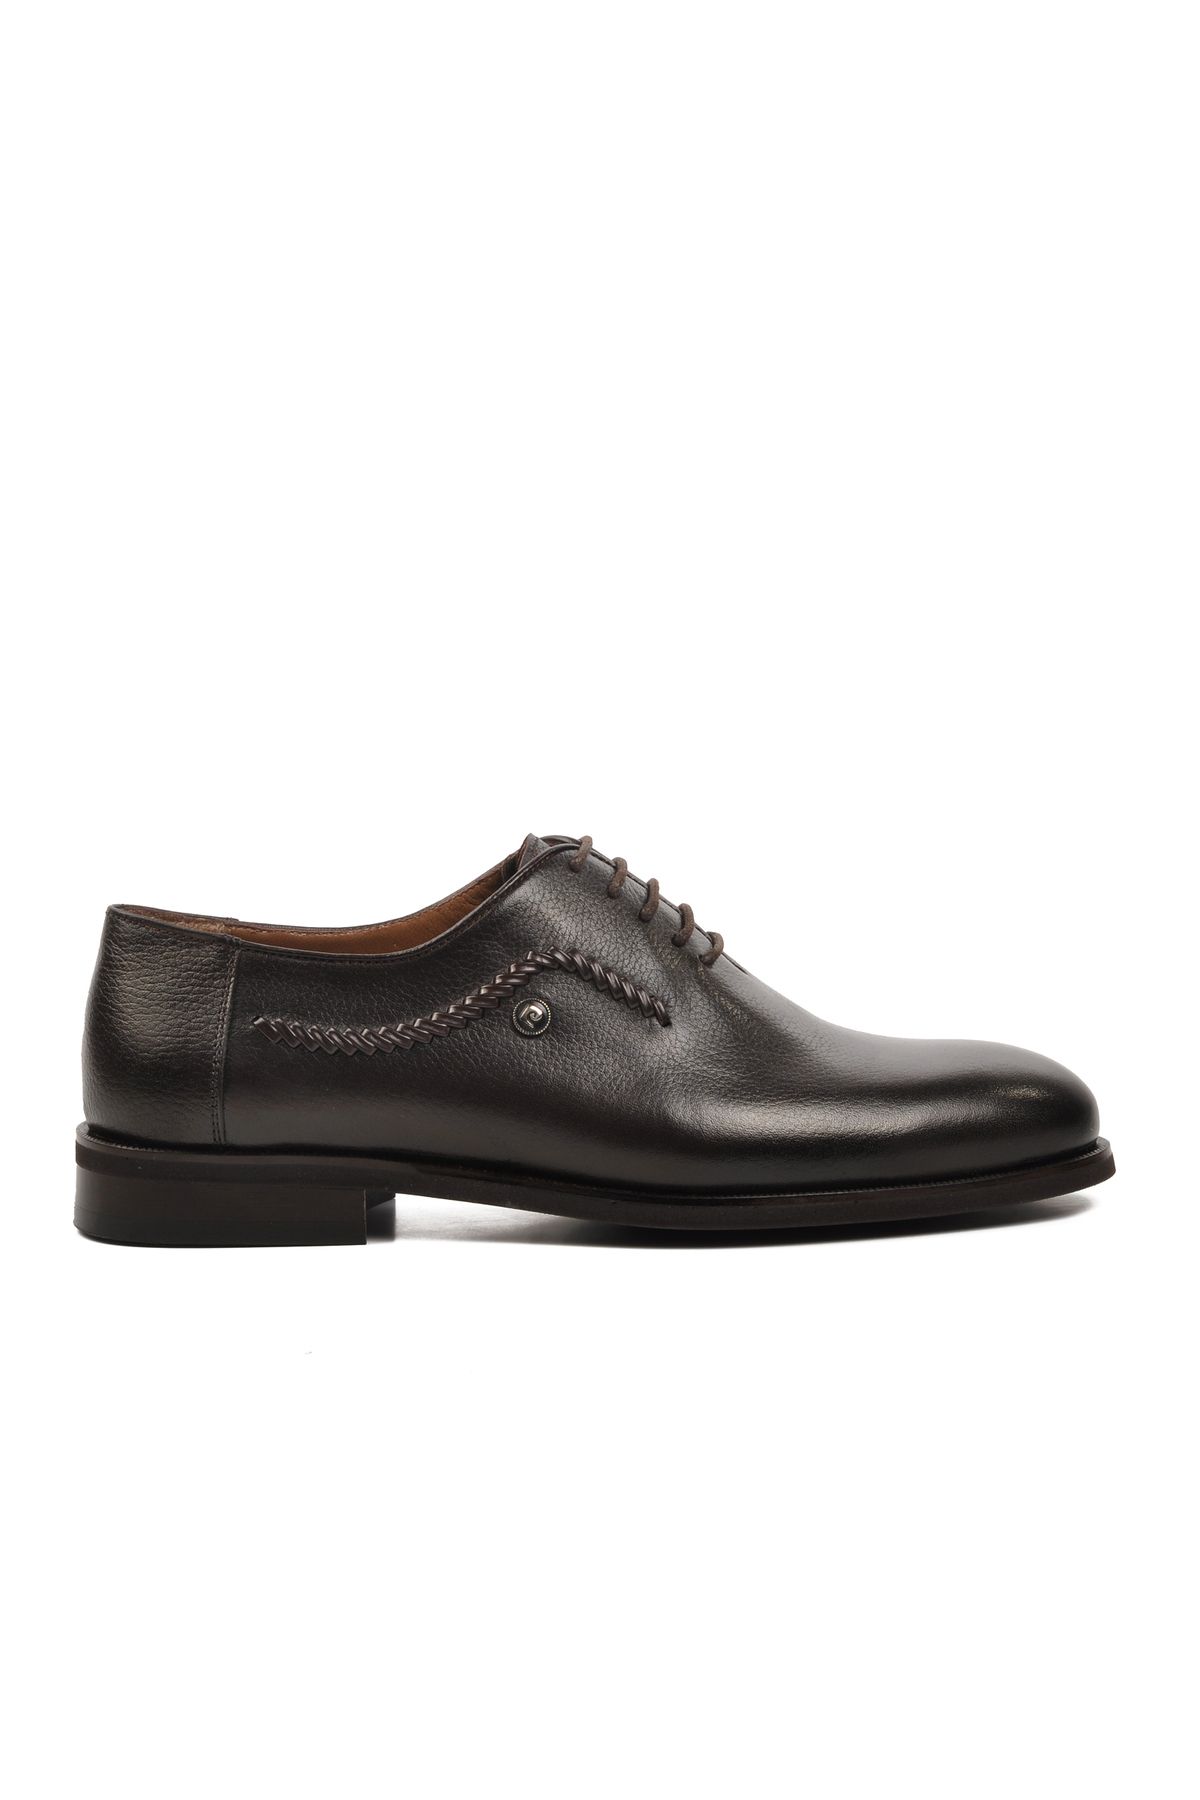 Pierre Cardin Kahverengi Hakiki Deri Erkek Klasik Ayakkabı